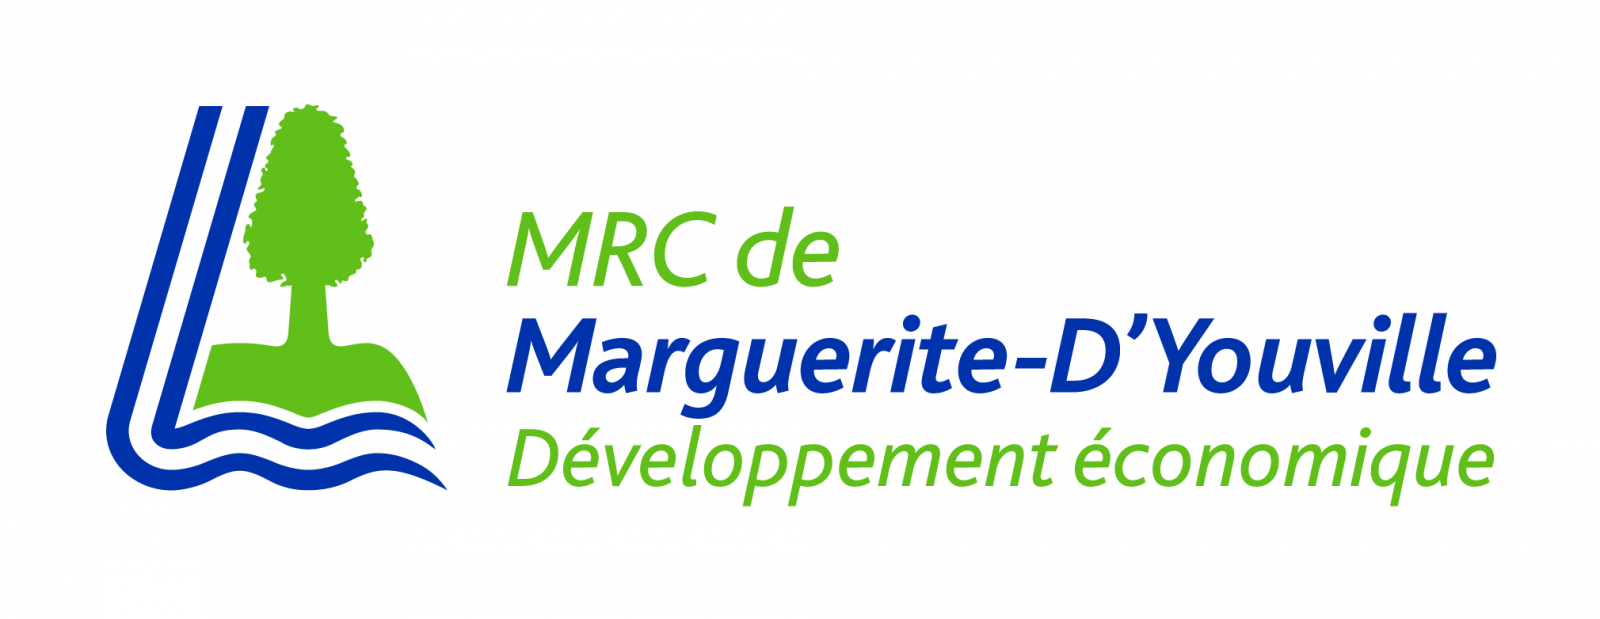 COVID-19: le Service de développement économique de la MRC soutient activement les entreprises de son territoire